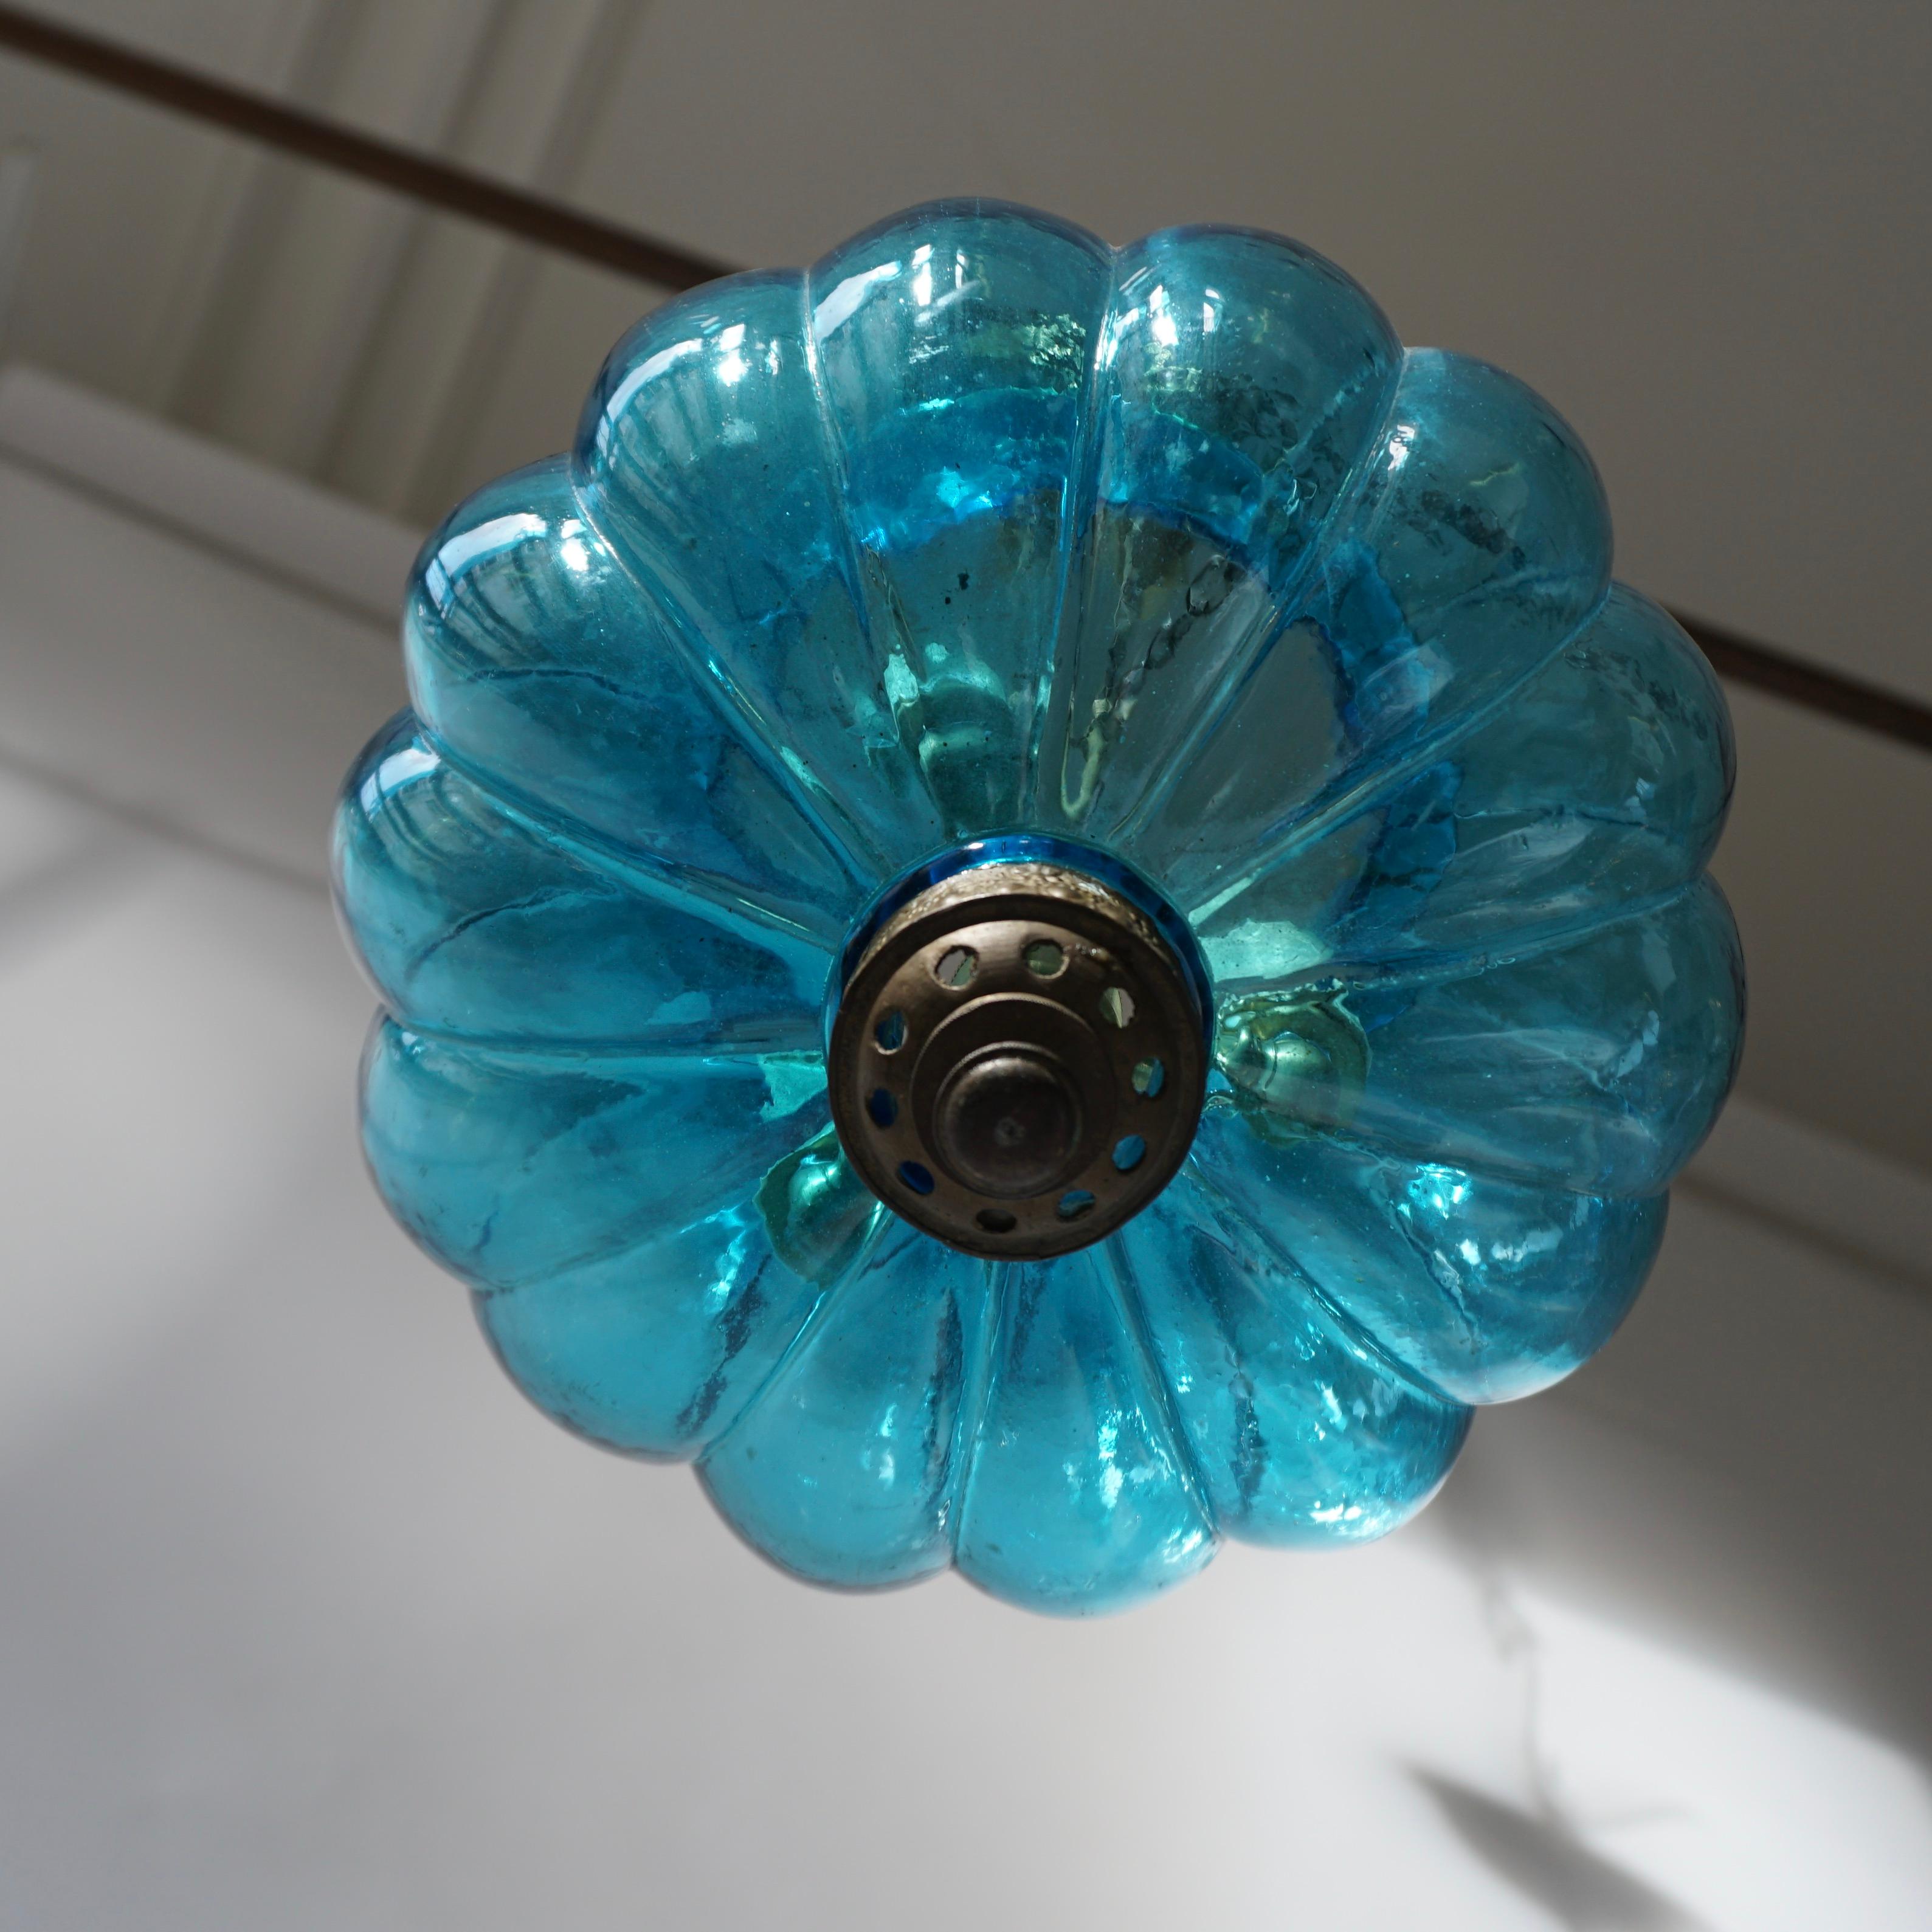 Pendentif en cristal bleu créé par De Grelle Val St. Lambert en 1950 Belgique.
Mesures : Diamètre 23 cm.
Hauteur totale, chaîne et verrière comprises, 100 cm.